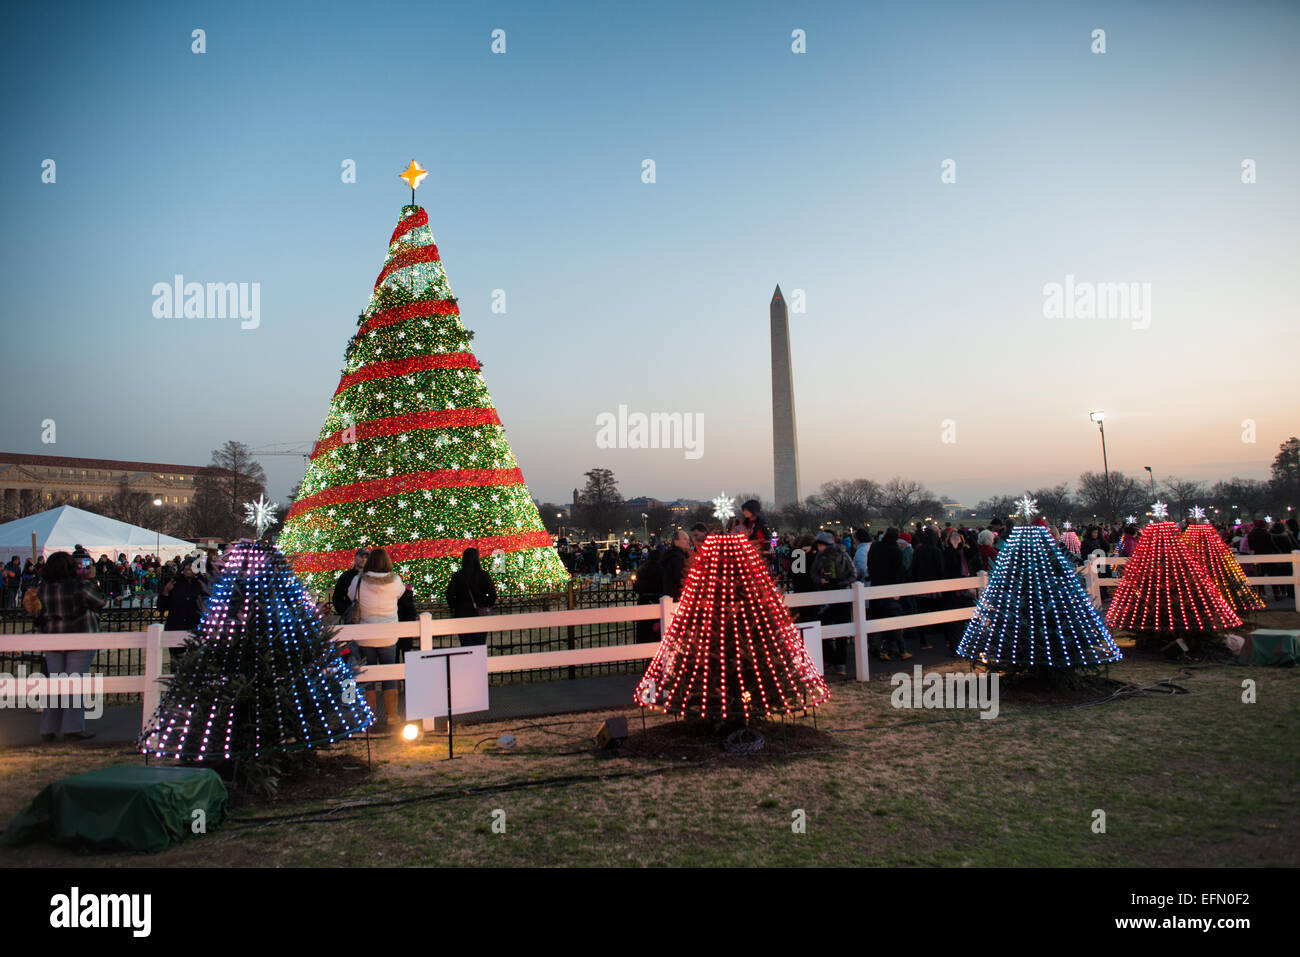 WASHINGTON DC, USA - eine Anzeige der kleinere Bäume, die jeweils als Symbol für einen Staat, um das White House Christmas Tree Cluster auf der Ellipse neben dem Weißen Haus in Washington. Das Washington Monument ist in der Ferne im Hintergrund. Stockfoto